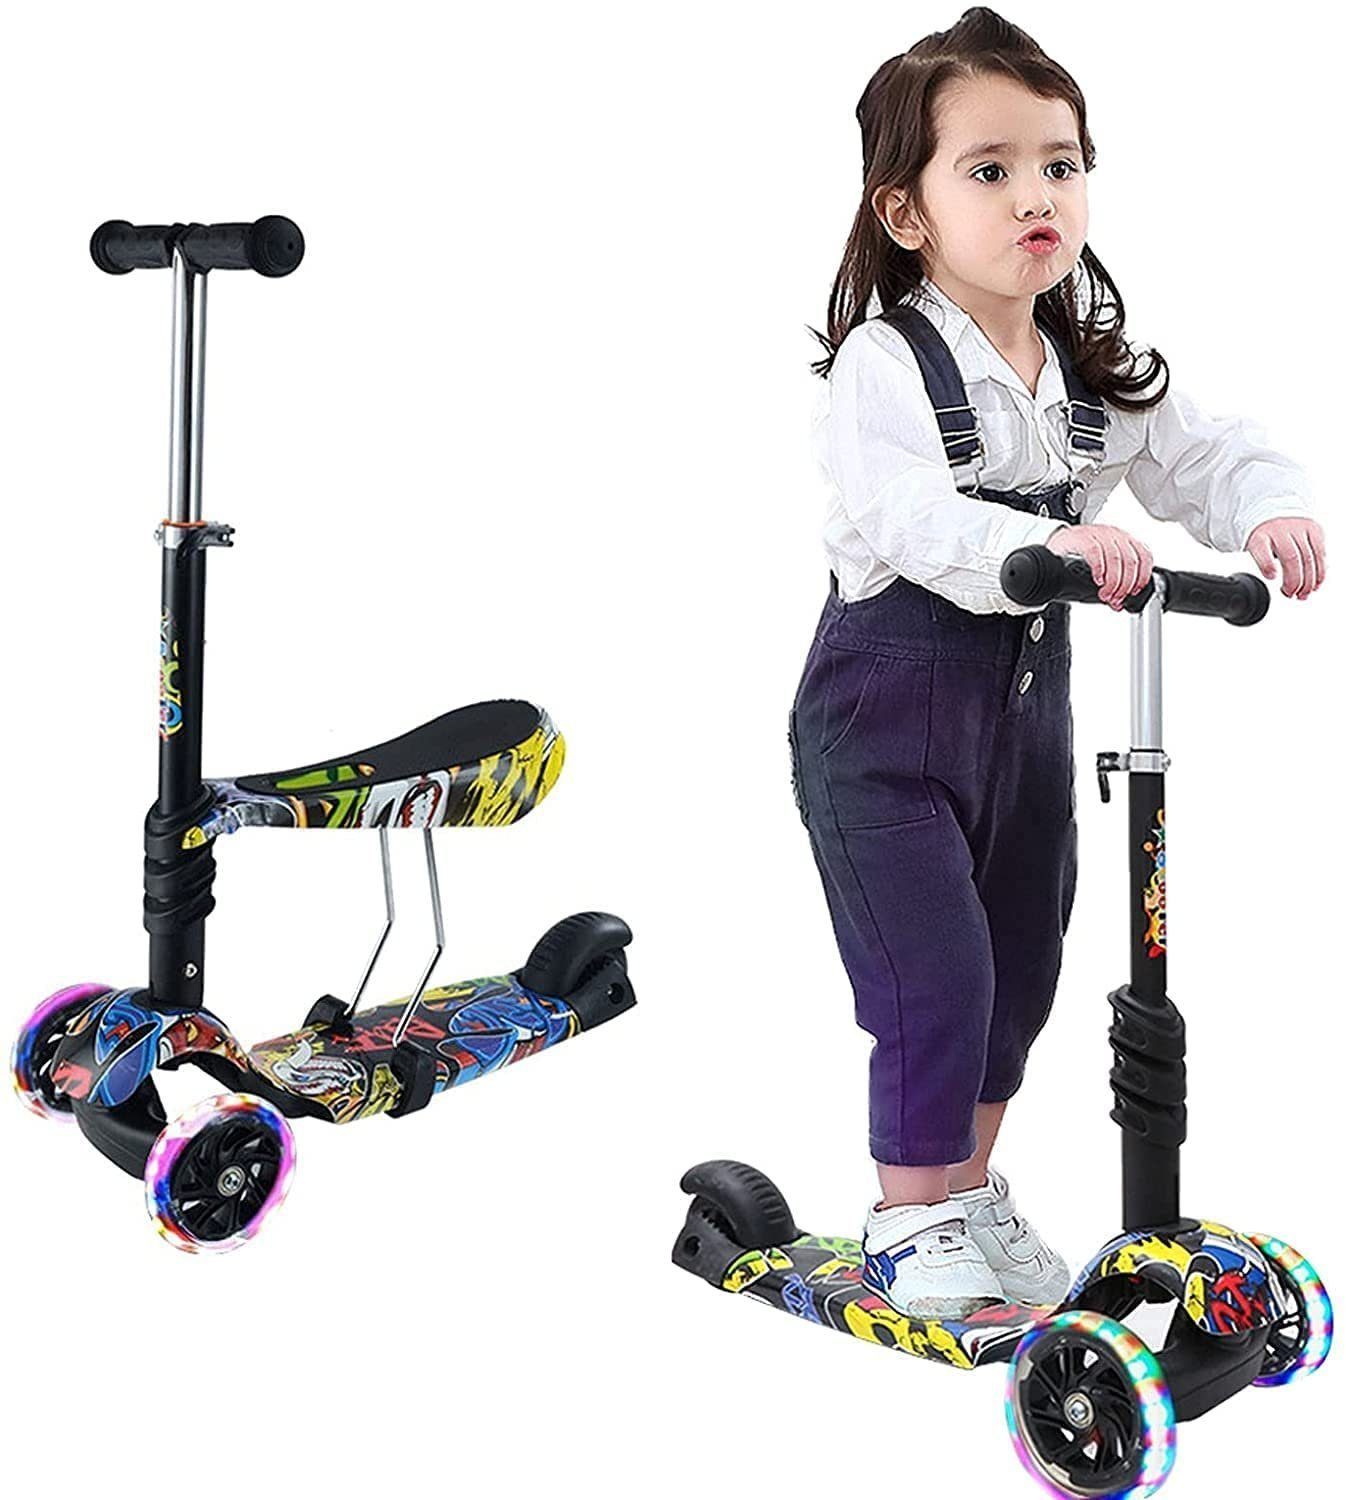 Kinder Scooter Kinderroller Verstellbarer Abnehmbarer Lenker Tret-Roller mit LED 